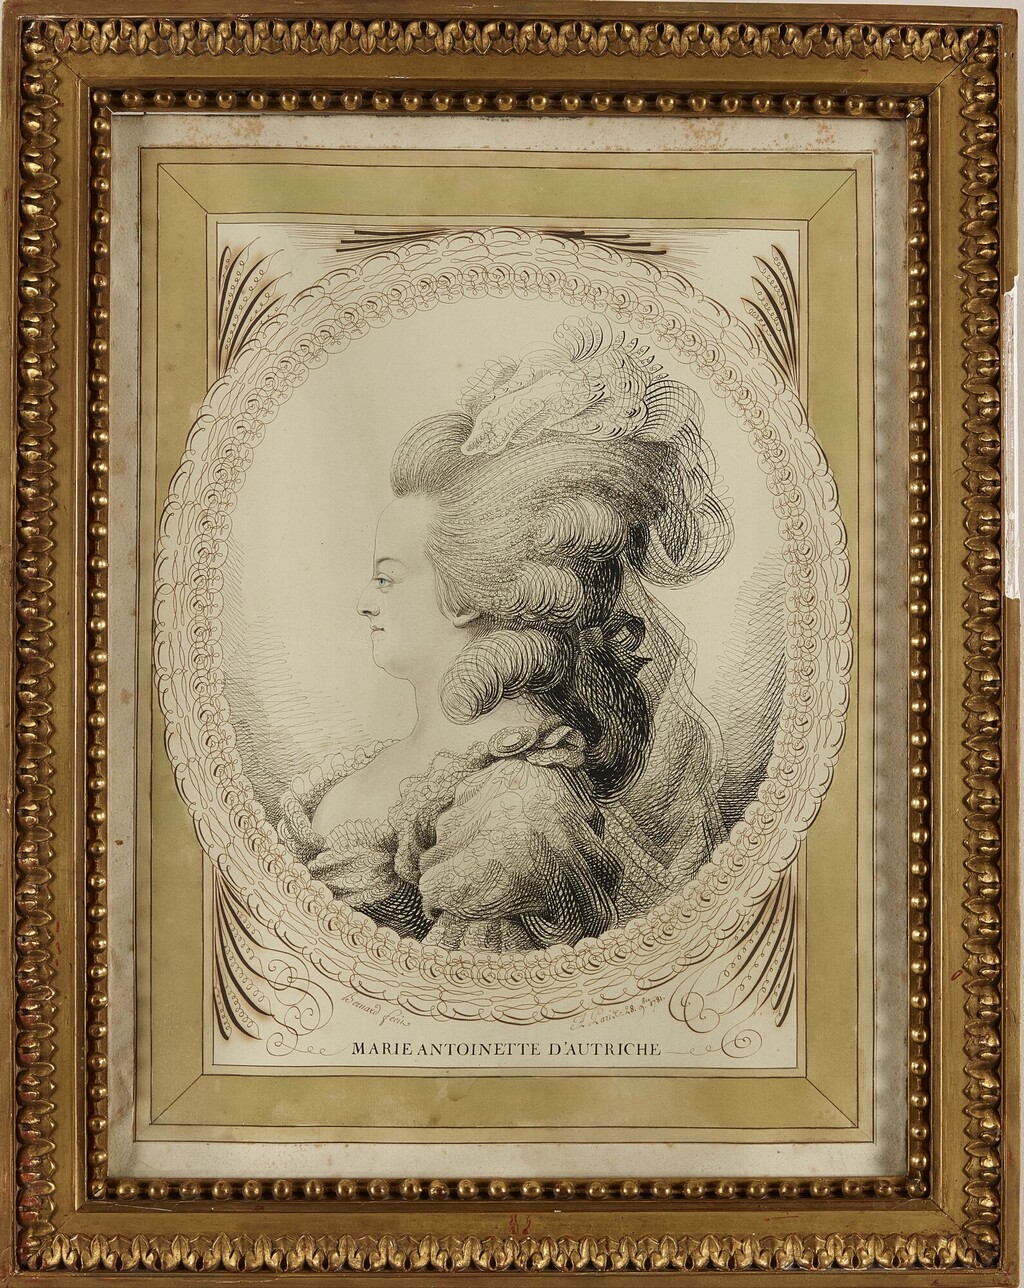 Les Bernard : portraits calligraphiques, dit au trait de plume, de Marie-Antoinette et Louis XVI Image217